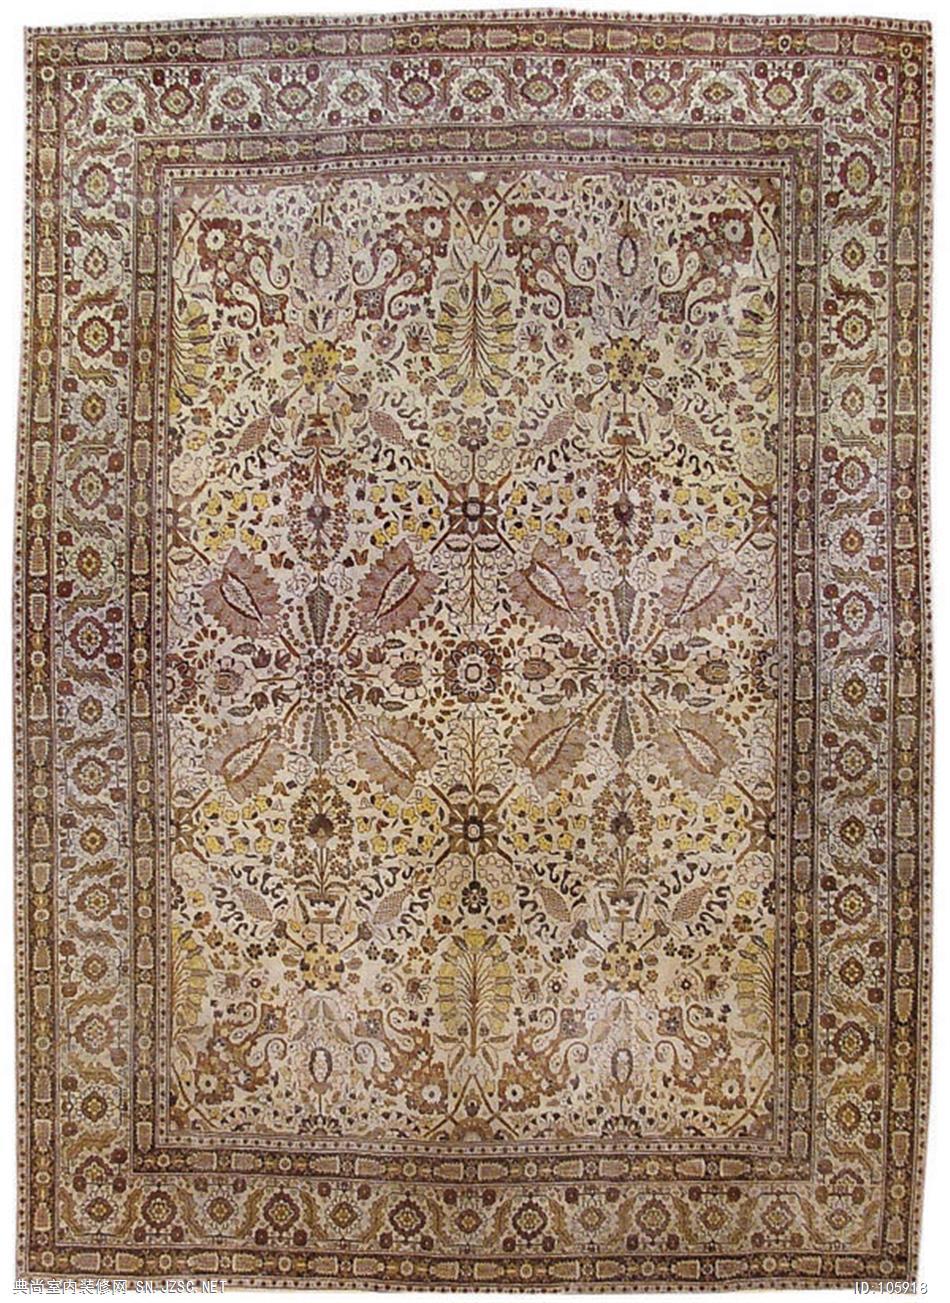 欧式风格地毯 (388)